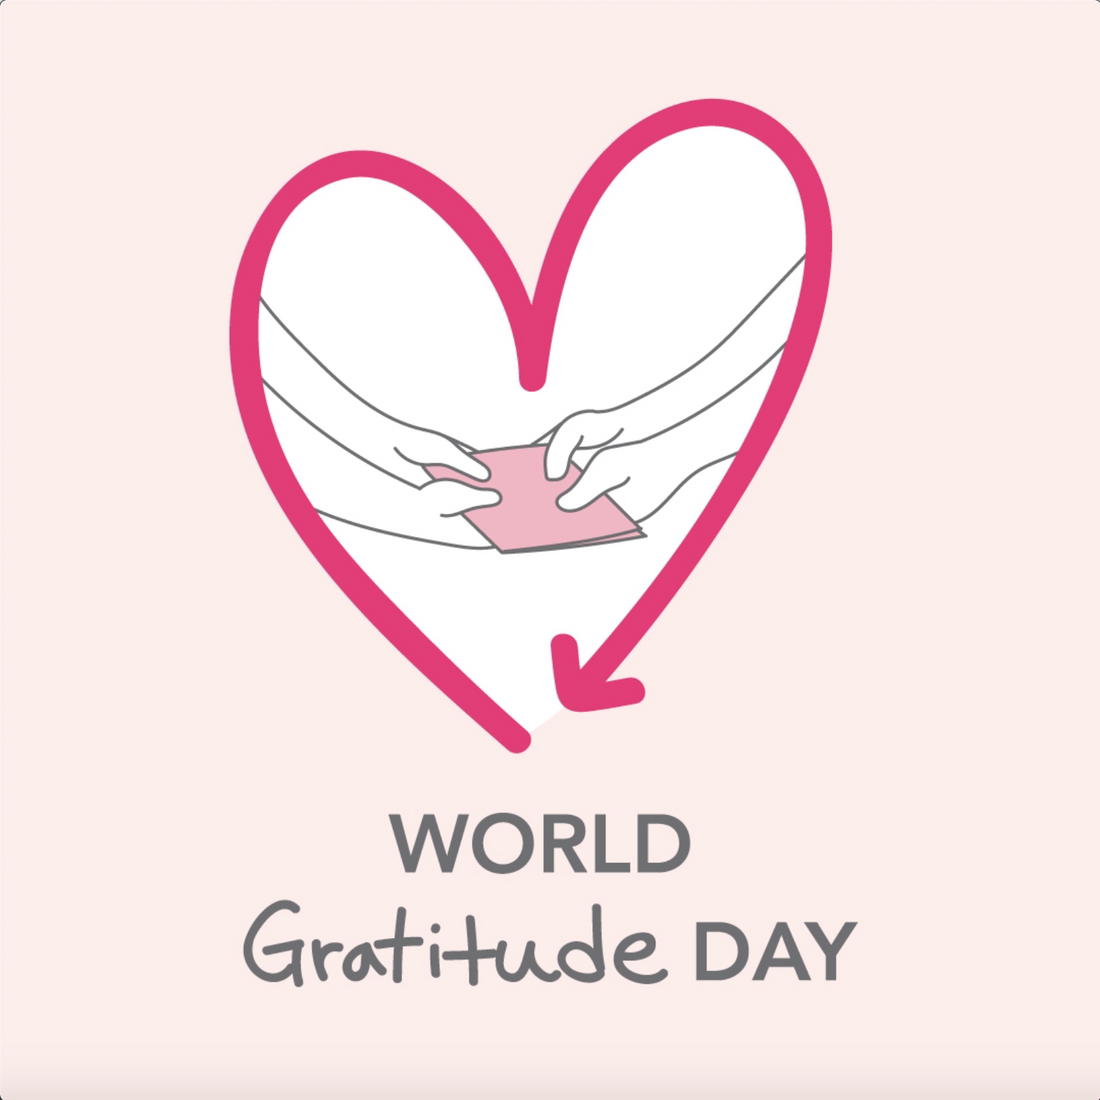 September 21st is World Gratitude Day!